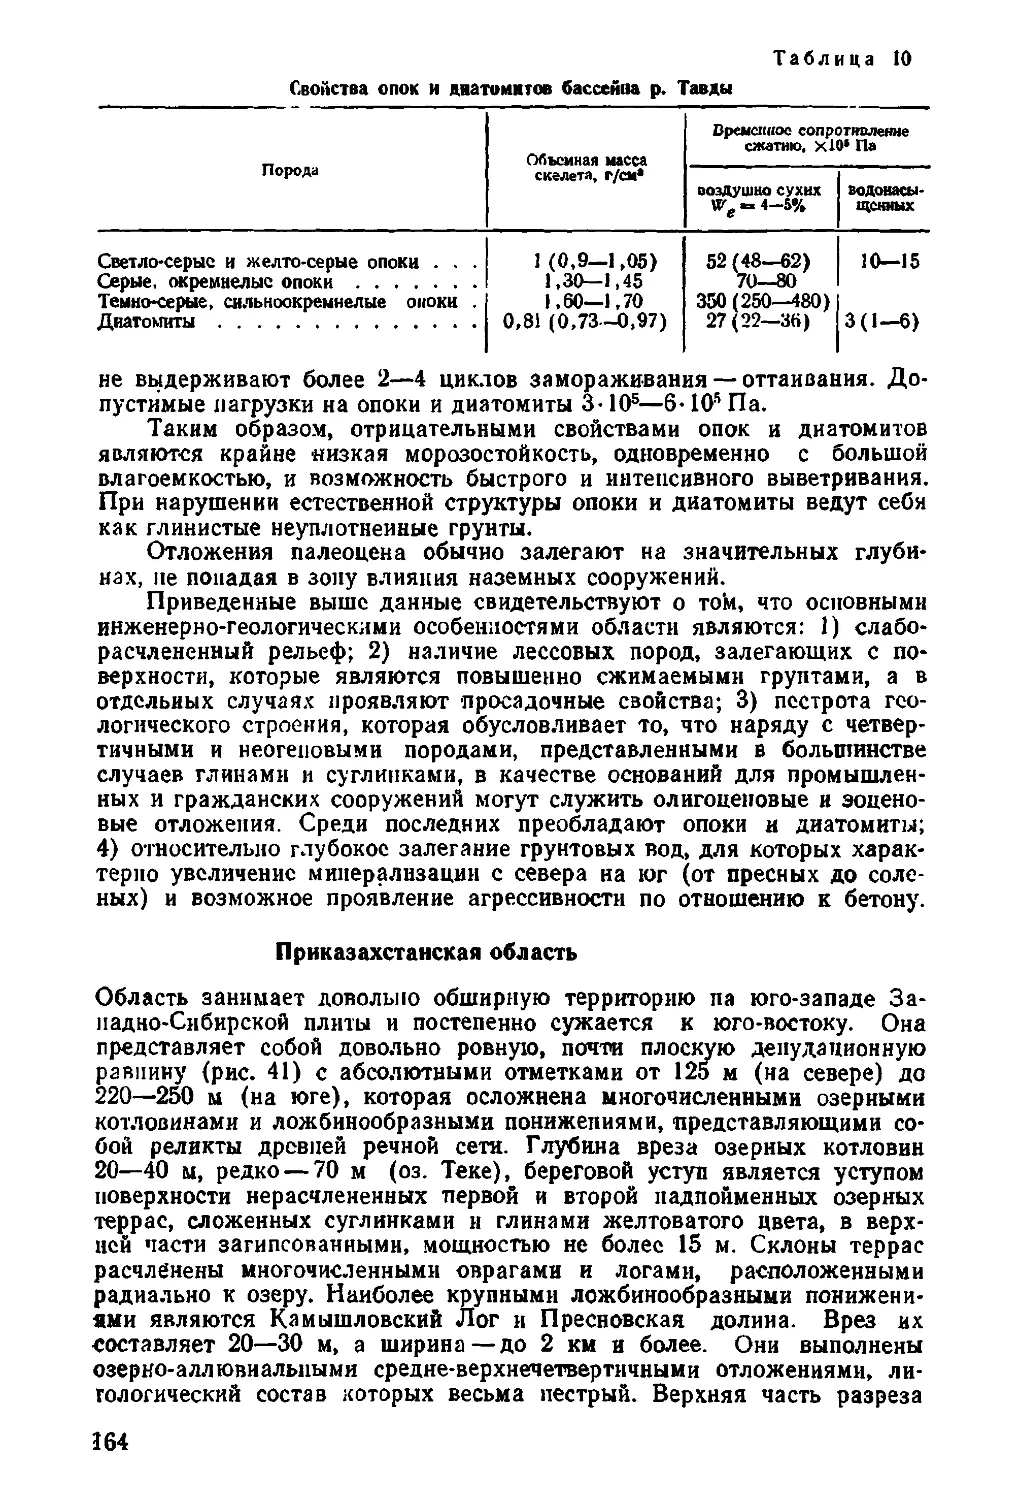 Приказахстанская область. Герасимова А.С., Кочев Д.Э., 164